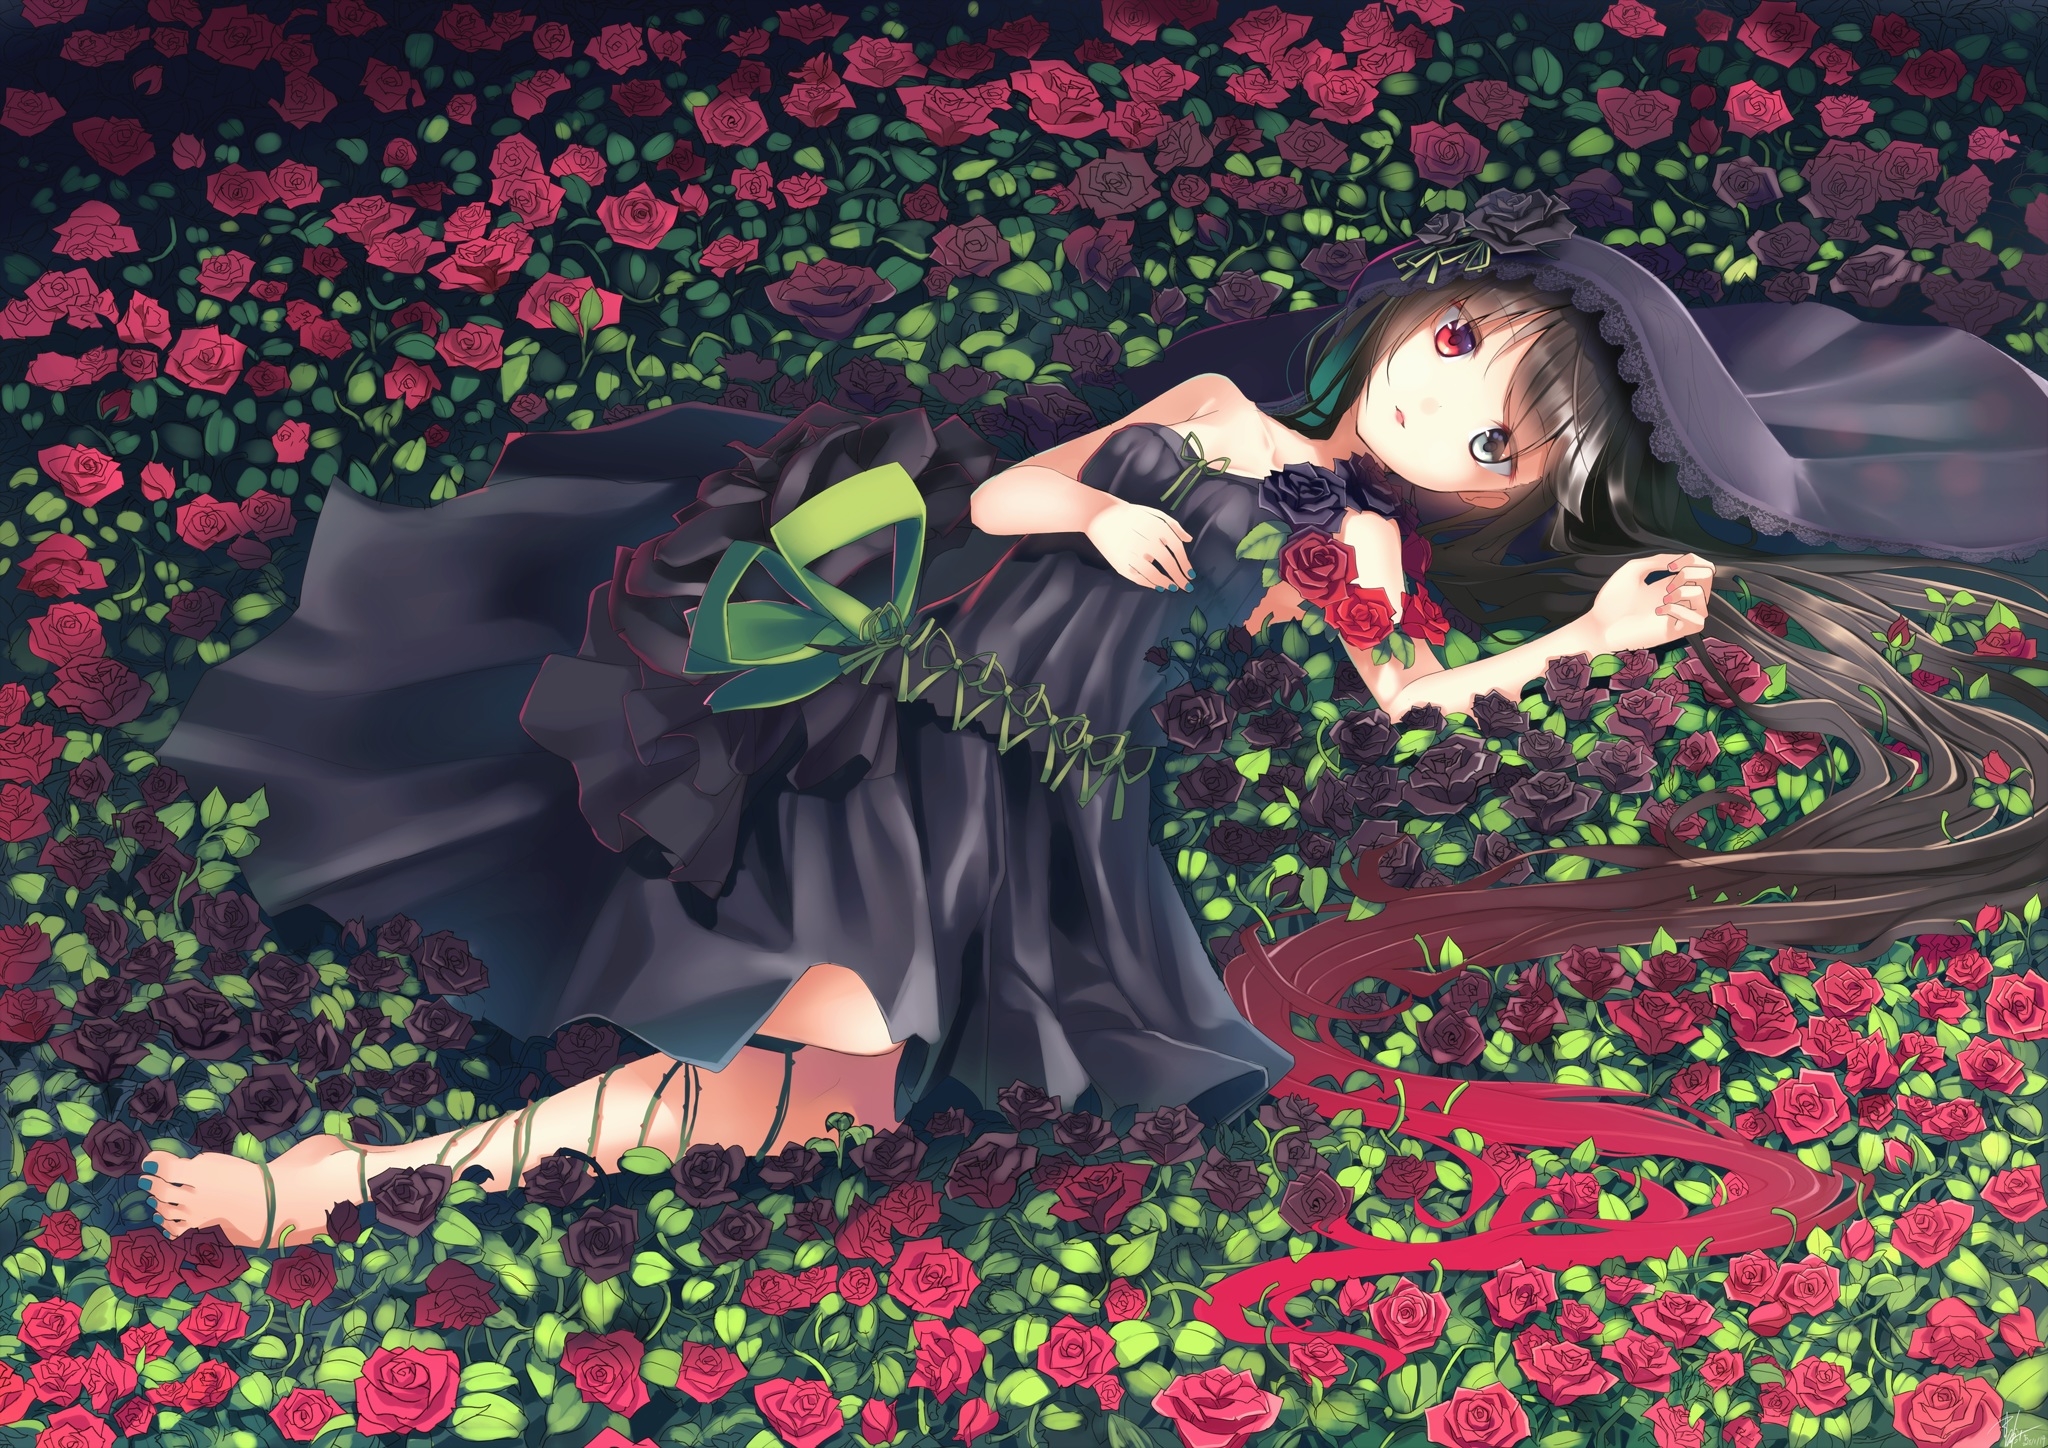 身穿黑色连衣裙的动漫女孩躺在铺满红玫瑰的田野上